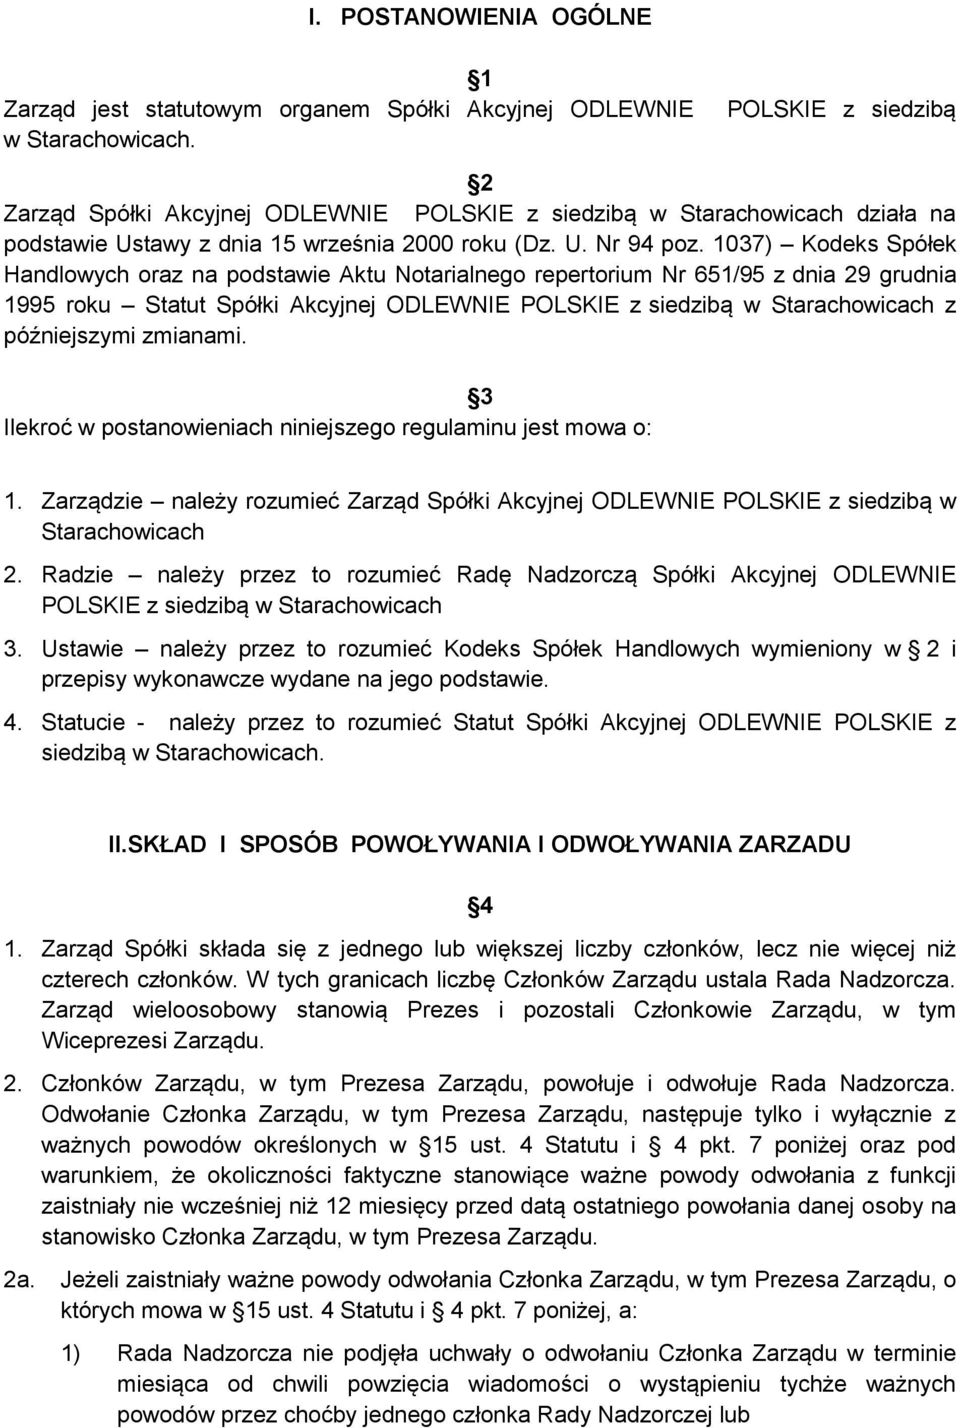 1037) Kodeks Spółek Handlowych oraz na podstawie Aktu Notarialnego repertorium Nr 651/95 z dnia 29 grudnia 1995 roku Statut Spółki Akcyjnej ODLEWNIE POLSKIE z siedzibą w Starachowicach z późniejszymi